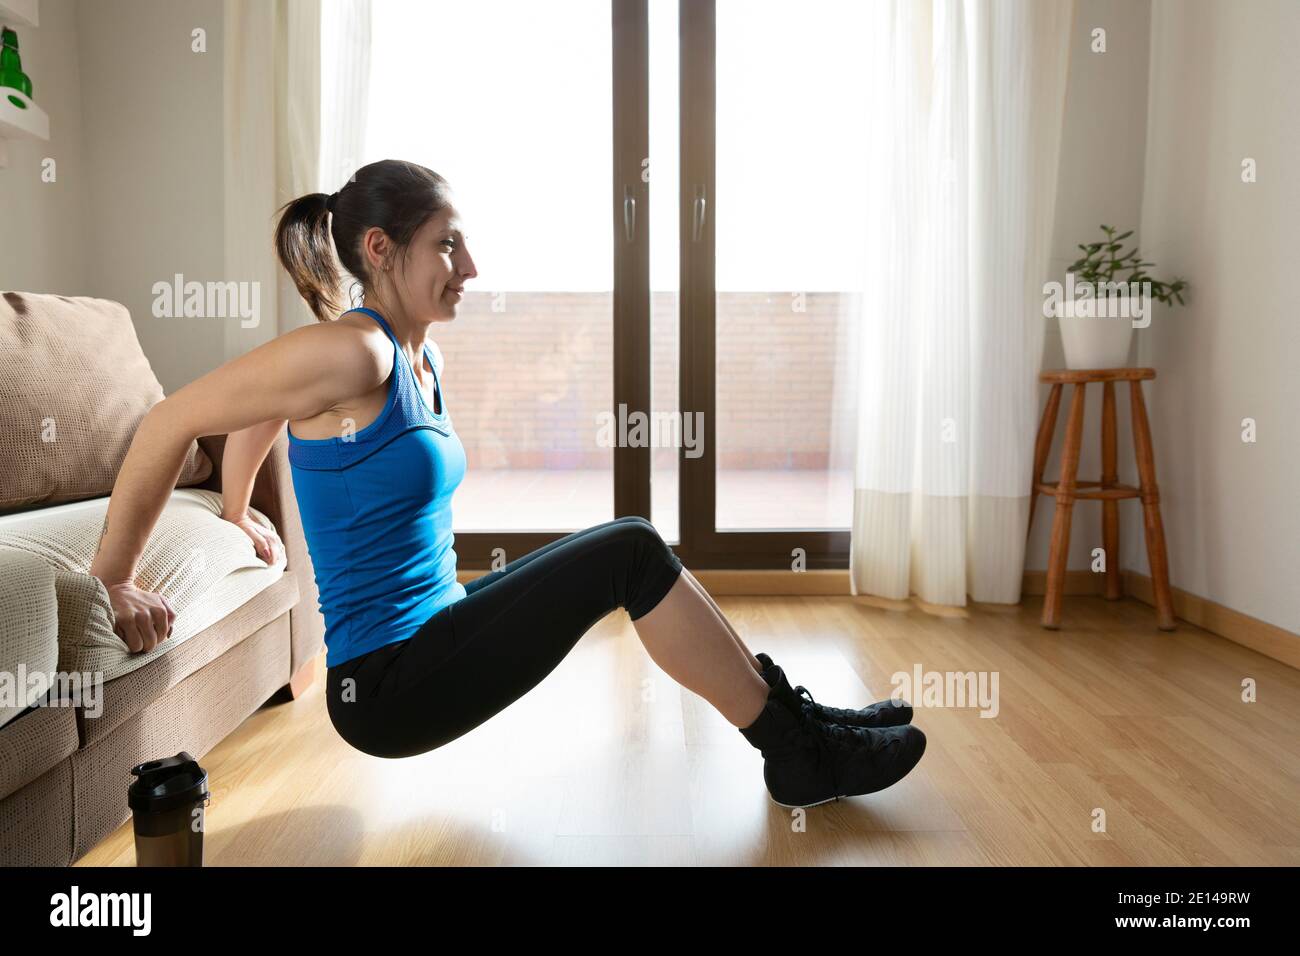 Portrait de la formation de la jeune femme à la maison. Concept de sport et de santé. Espace pour le texte. Banque D'Images